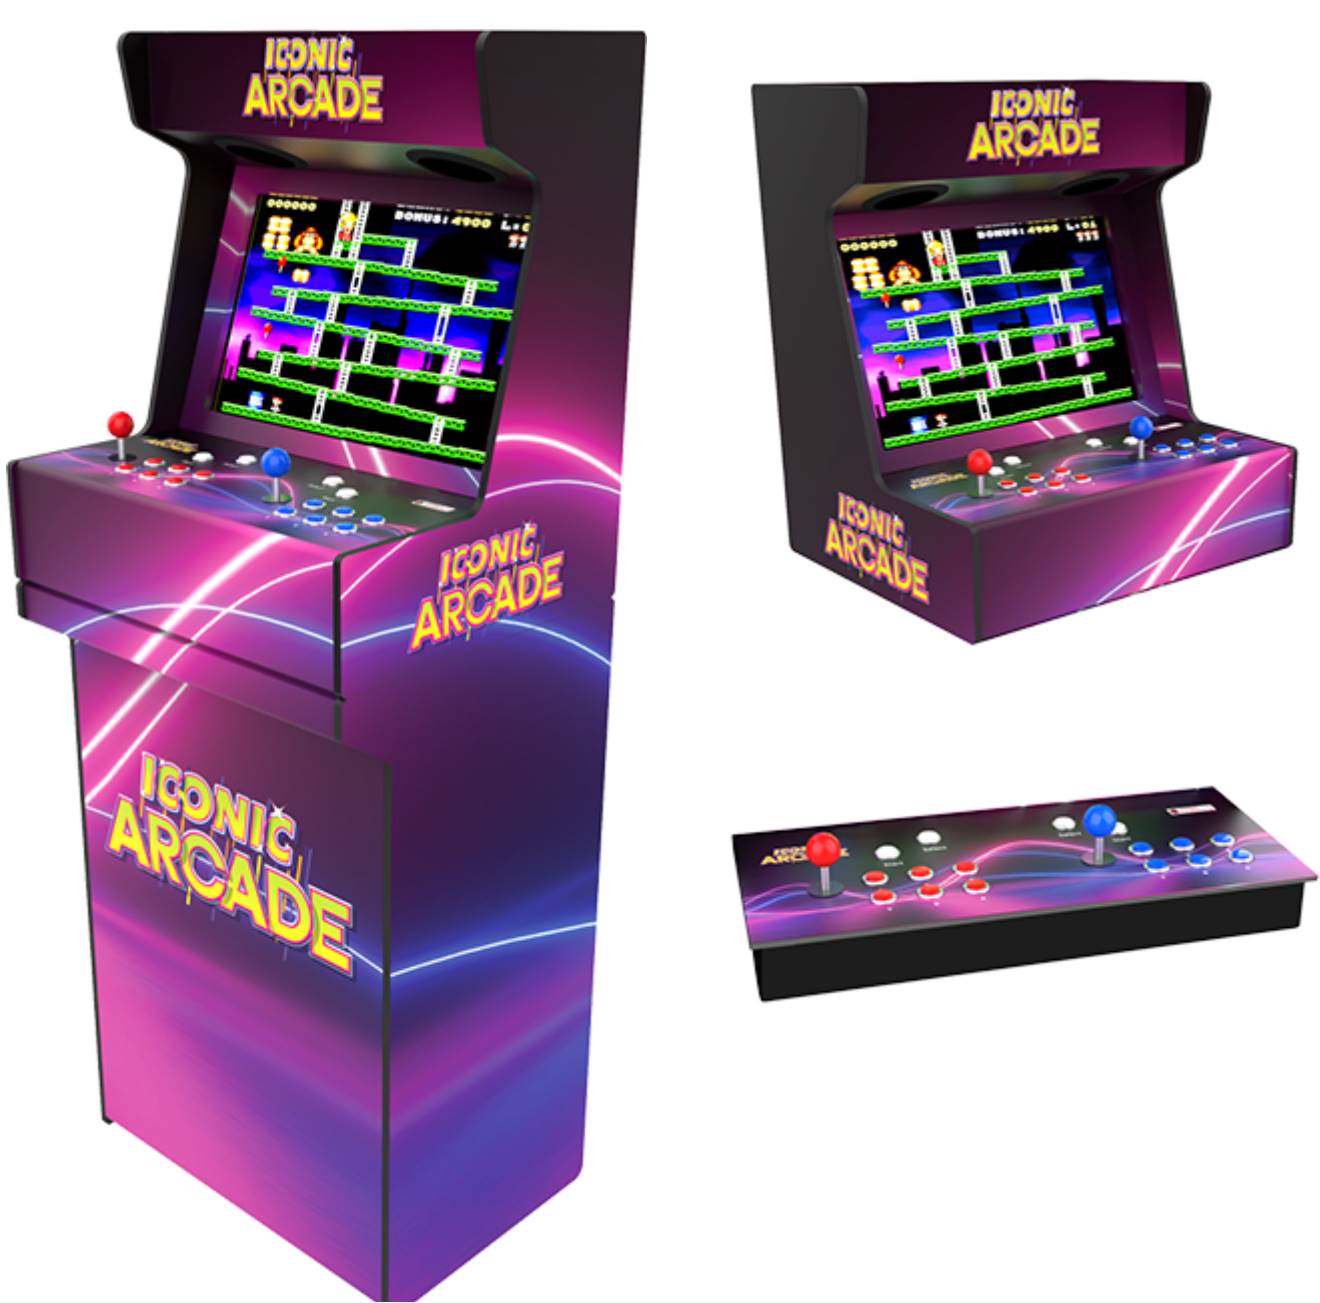 iconic arcade